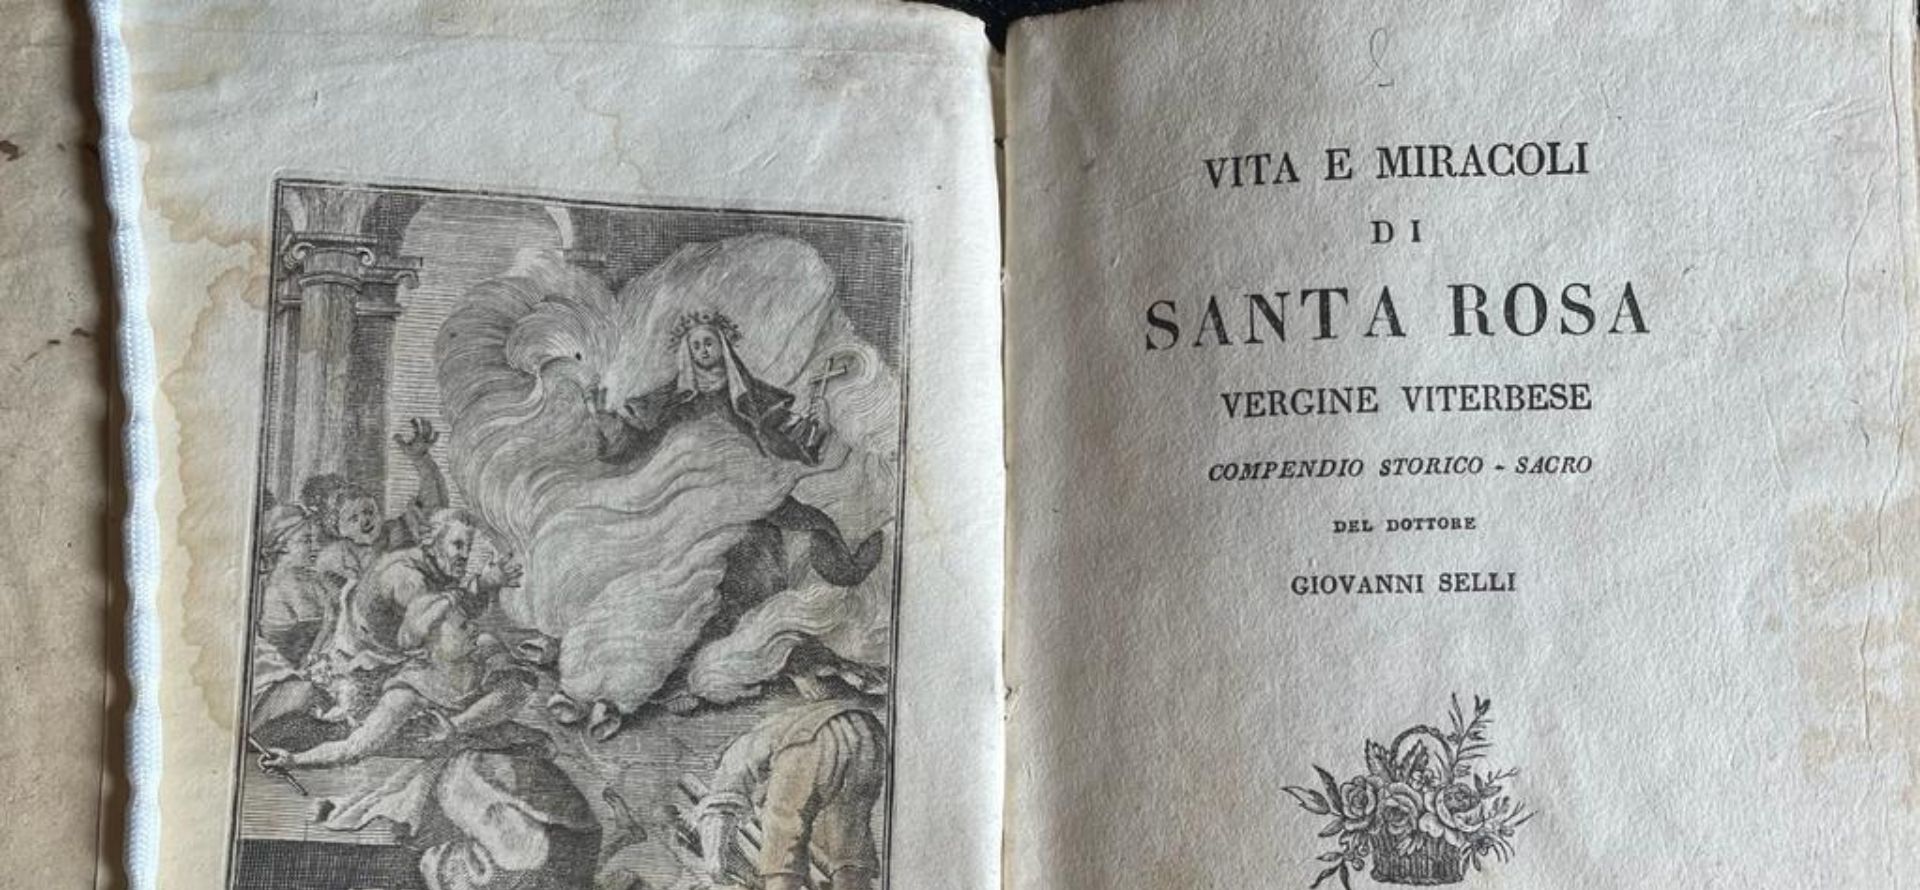 Micro-mostra dal titolo “Figurazioni di Santa Rosa dal patrimonio della Biblioteca Consorziale di Viterbo”